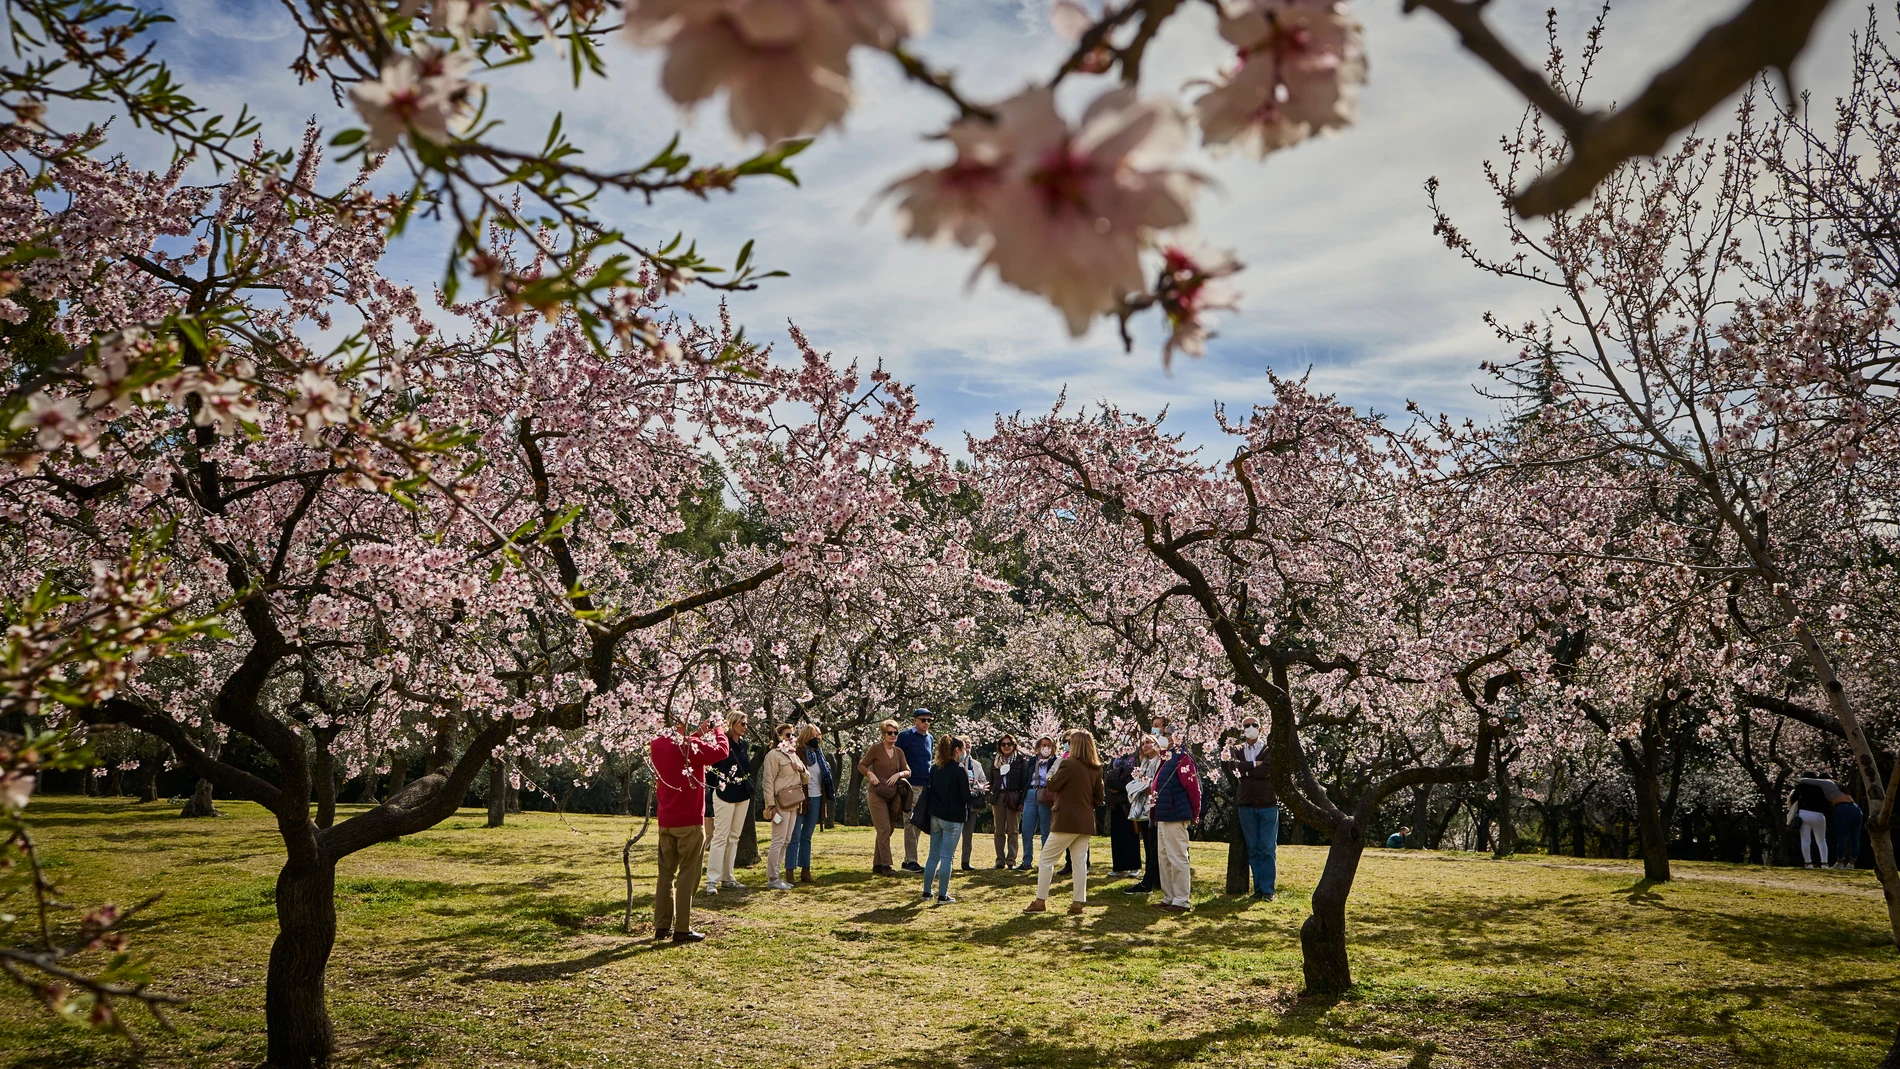 Visitantes acuden a la finca “Quinta de los Molinos” para ver los almendros en flor